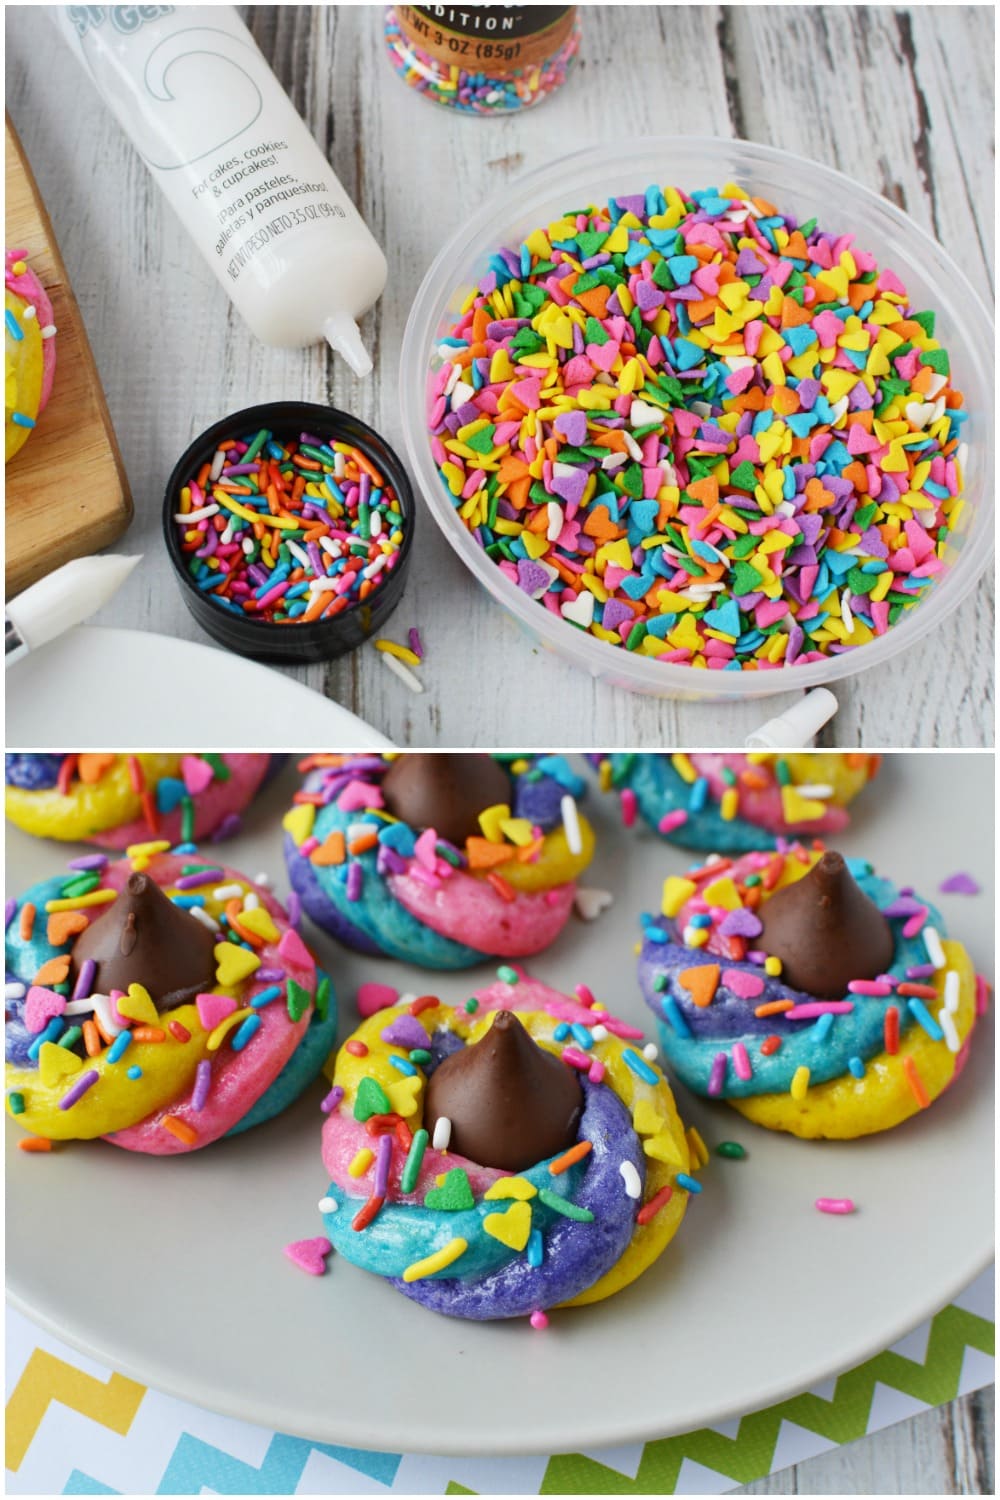 Sprinkles and gel used to decorate unicorn poop cookies